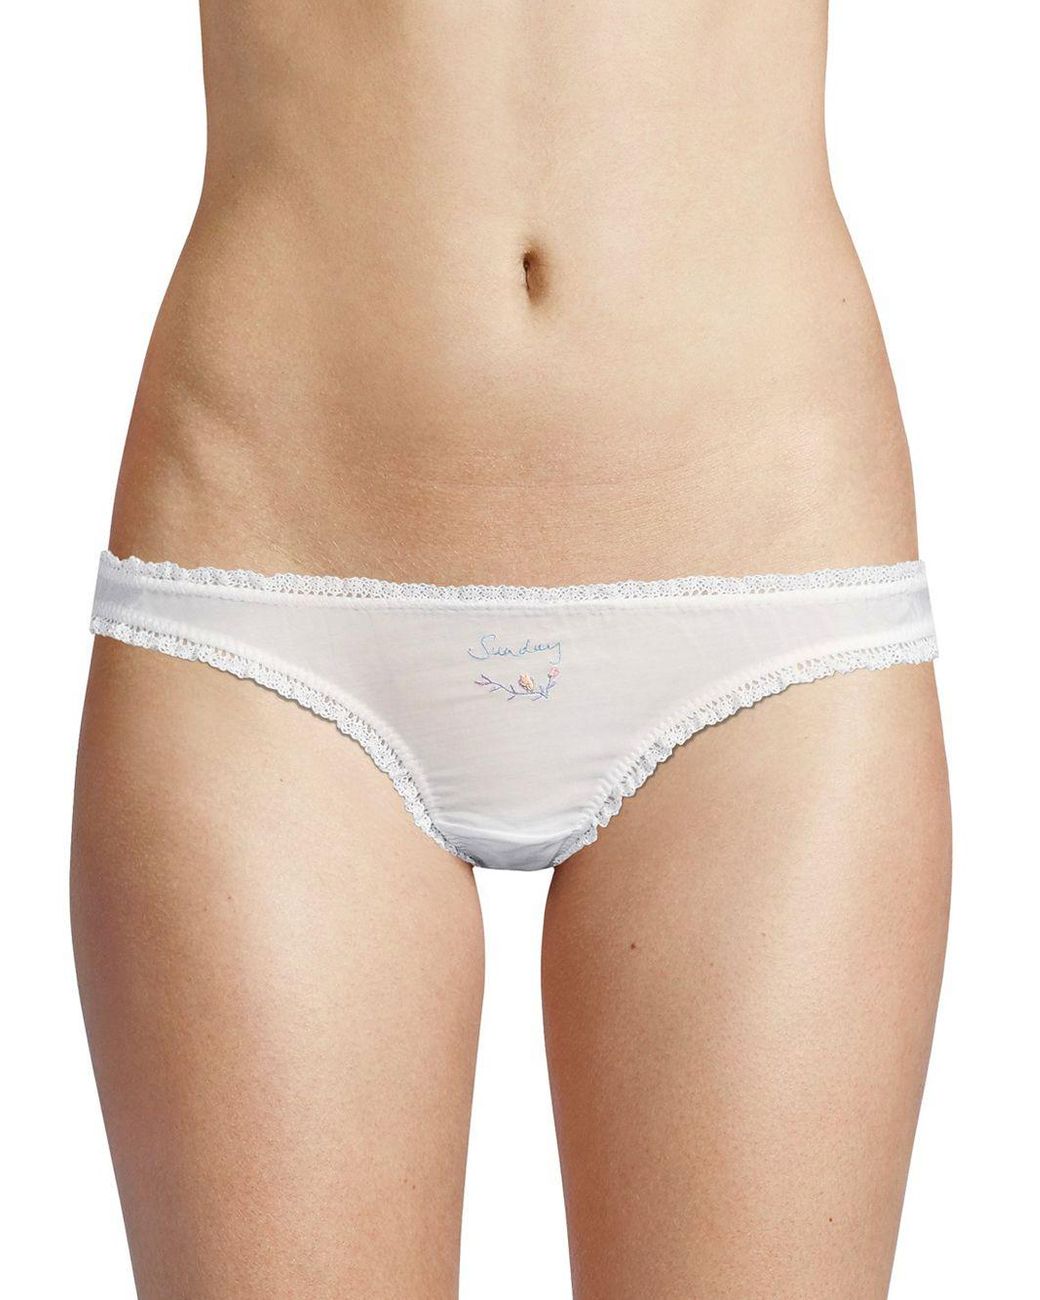 Stella McCartney Seven-piece Weekday Embroidered Underwear Box Set